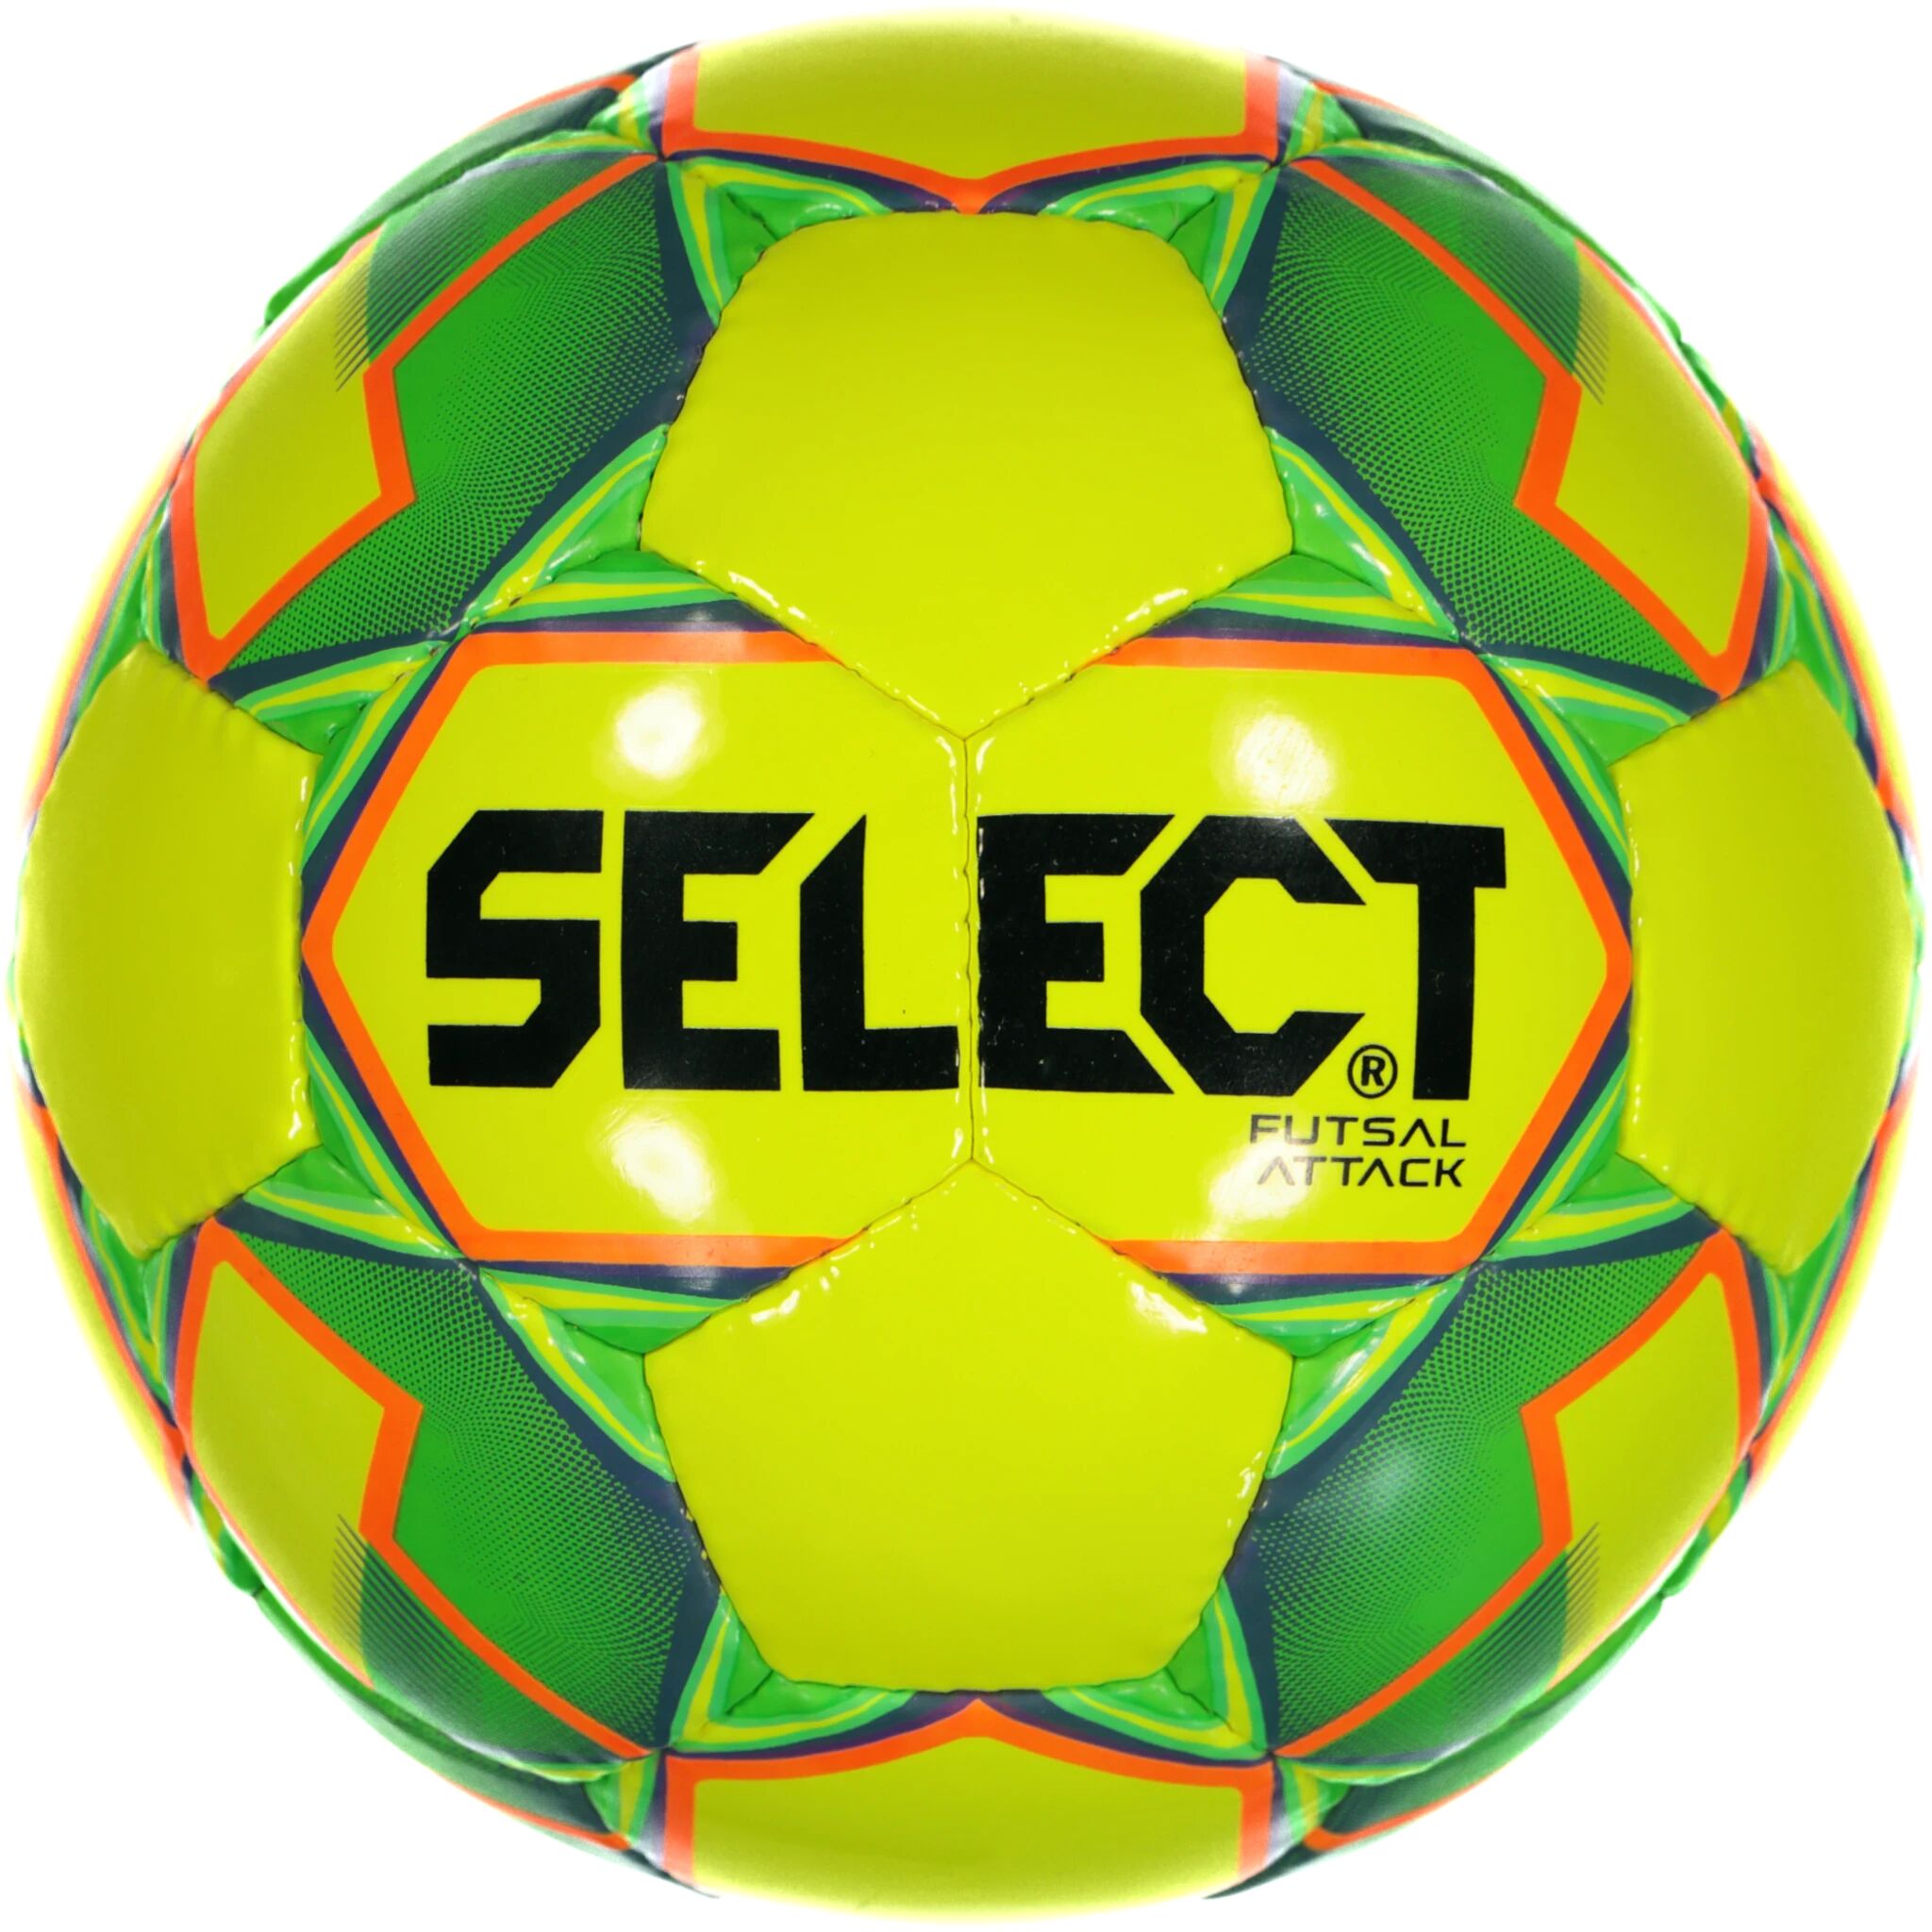 Select Futsal Attack, fotball 4,5 YELLOW/GREEN